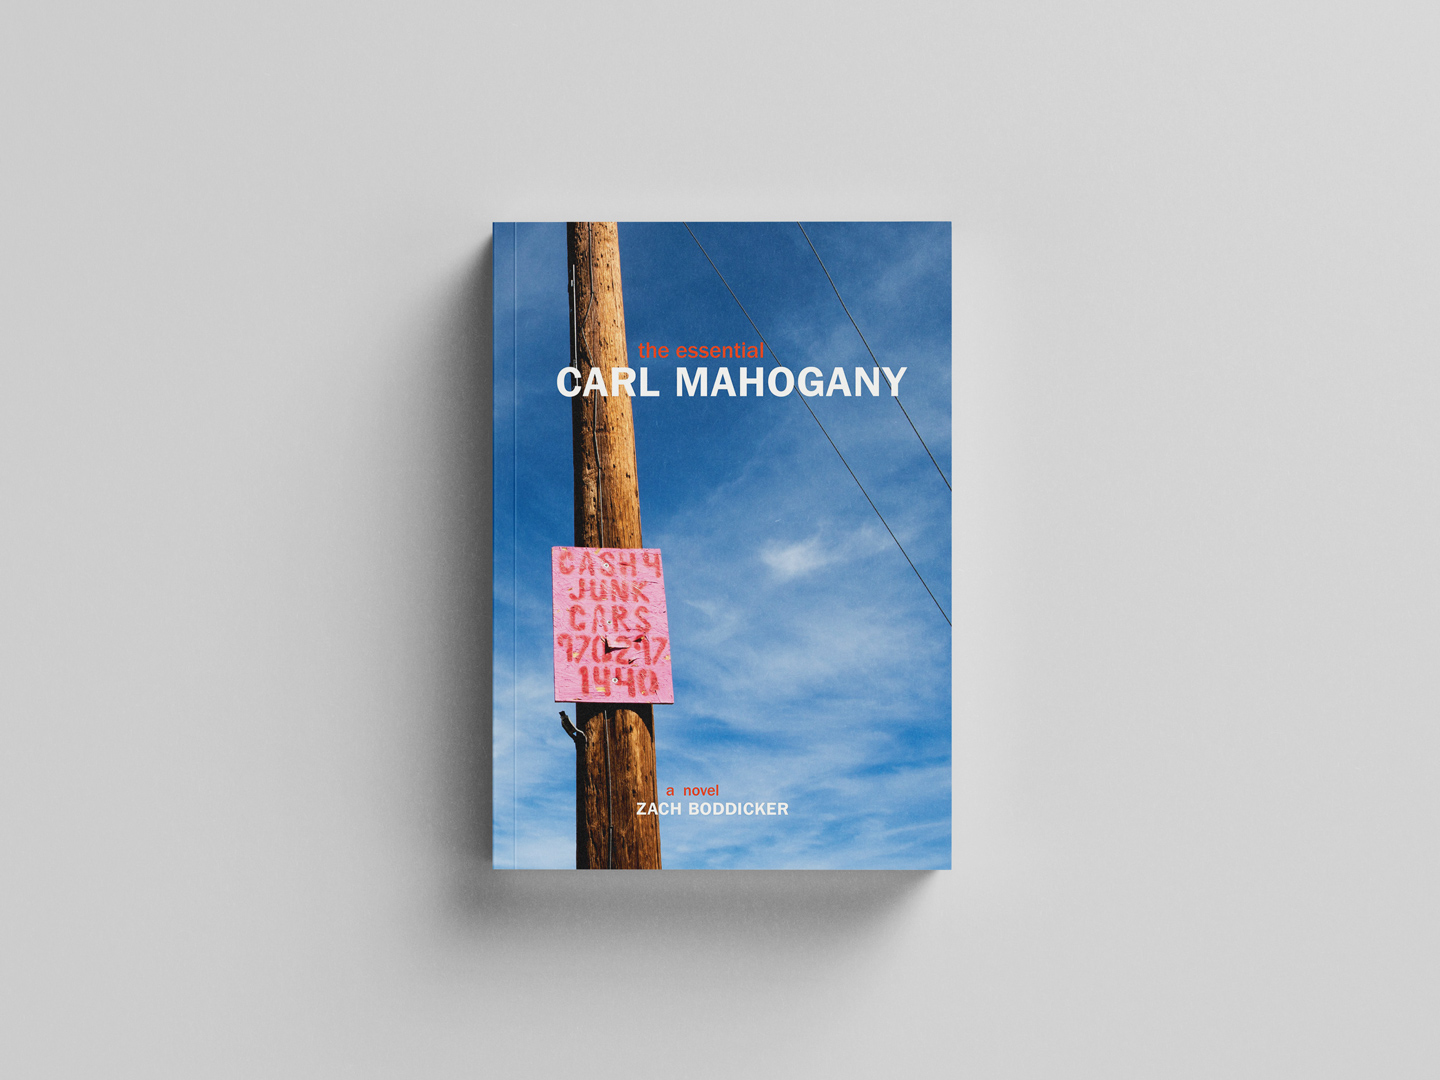 The Essential Carl Mahogany by Zach Boddicker